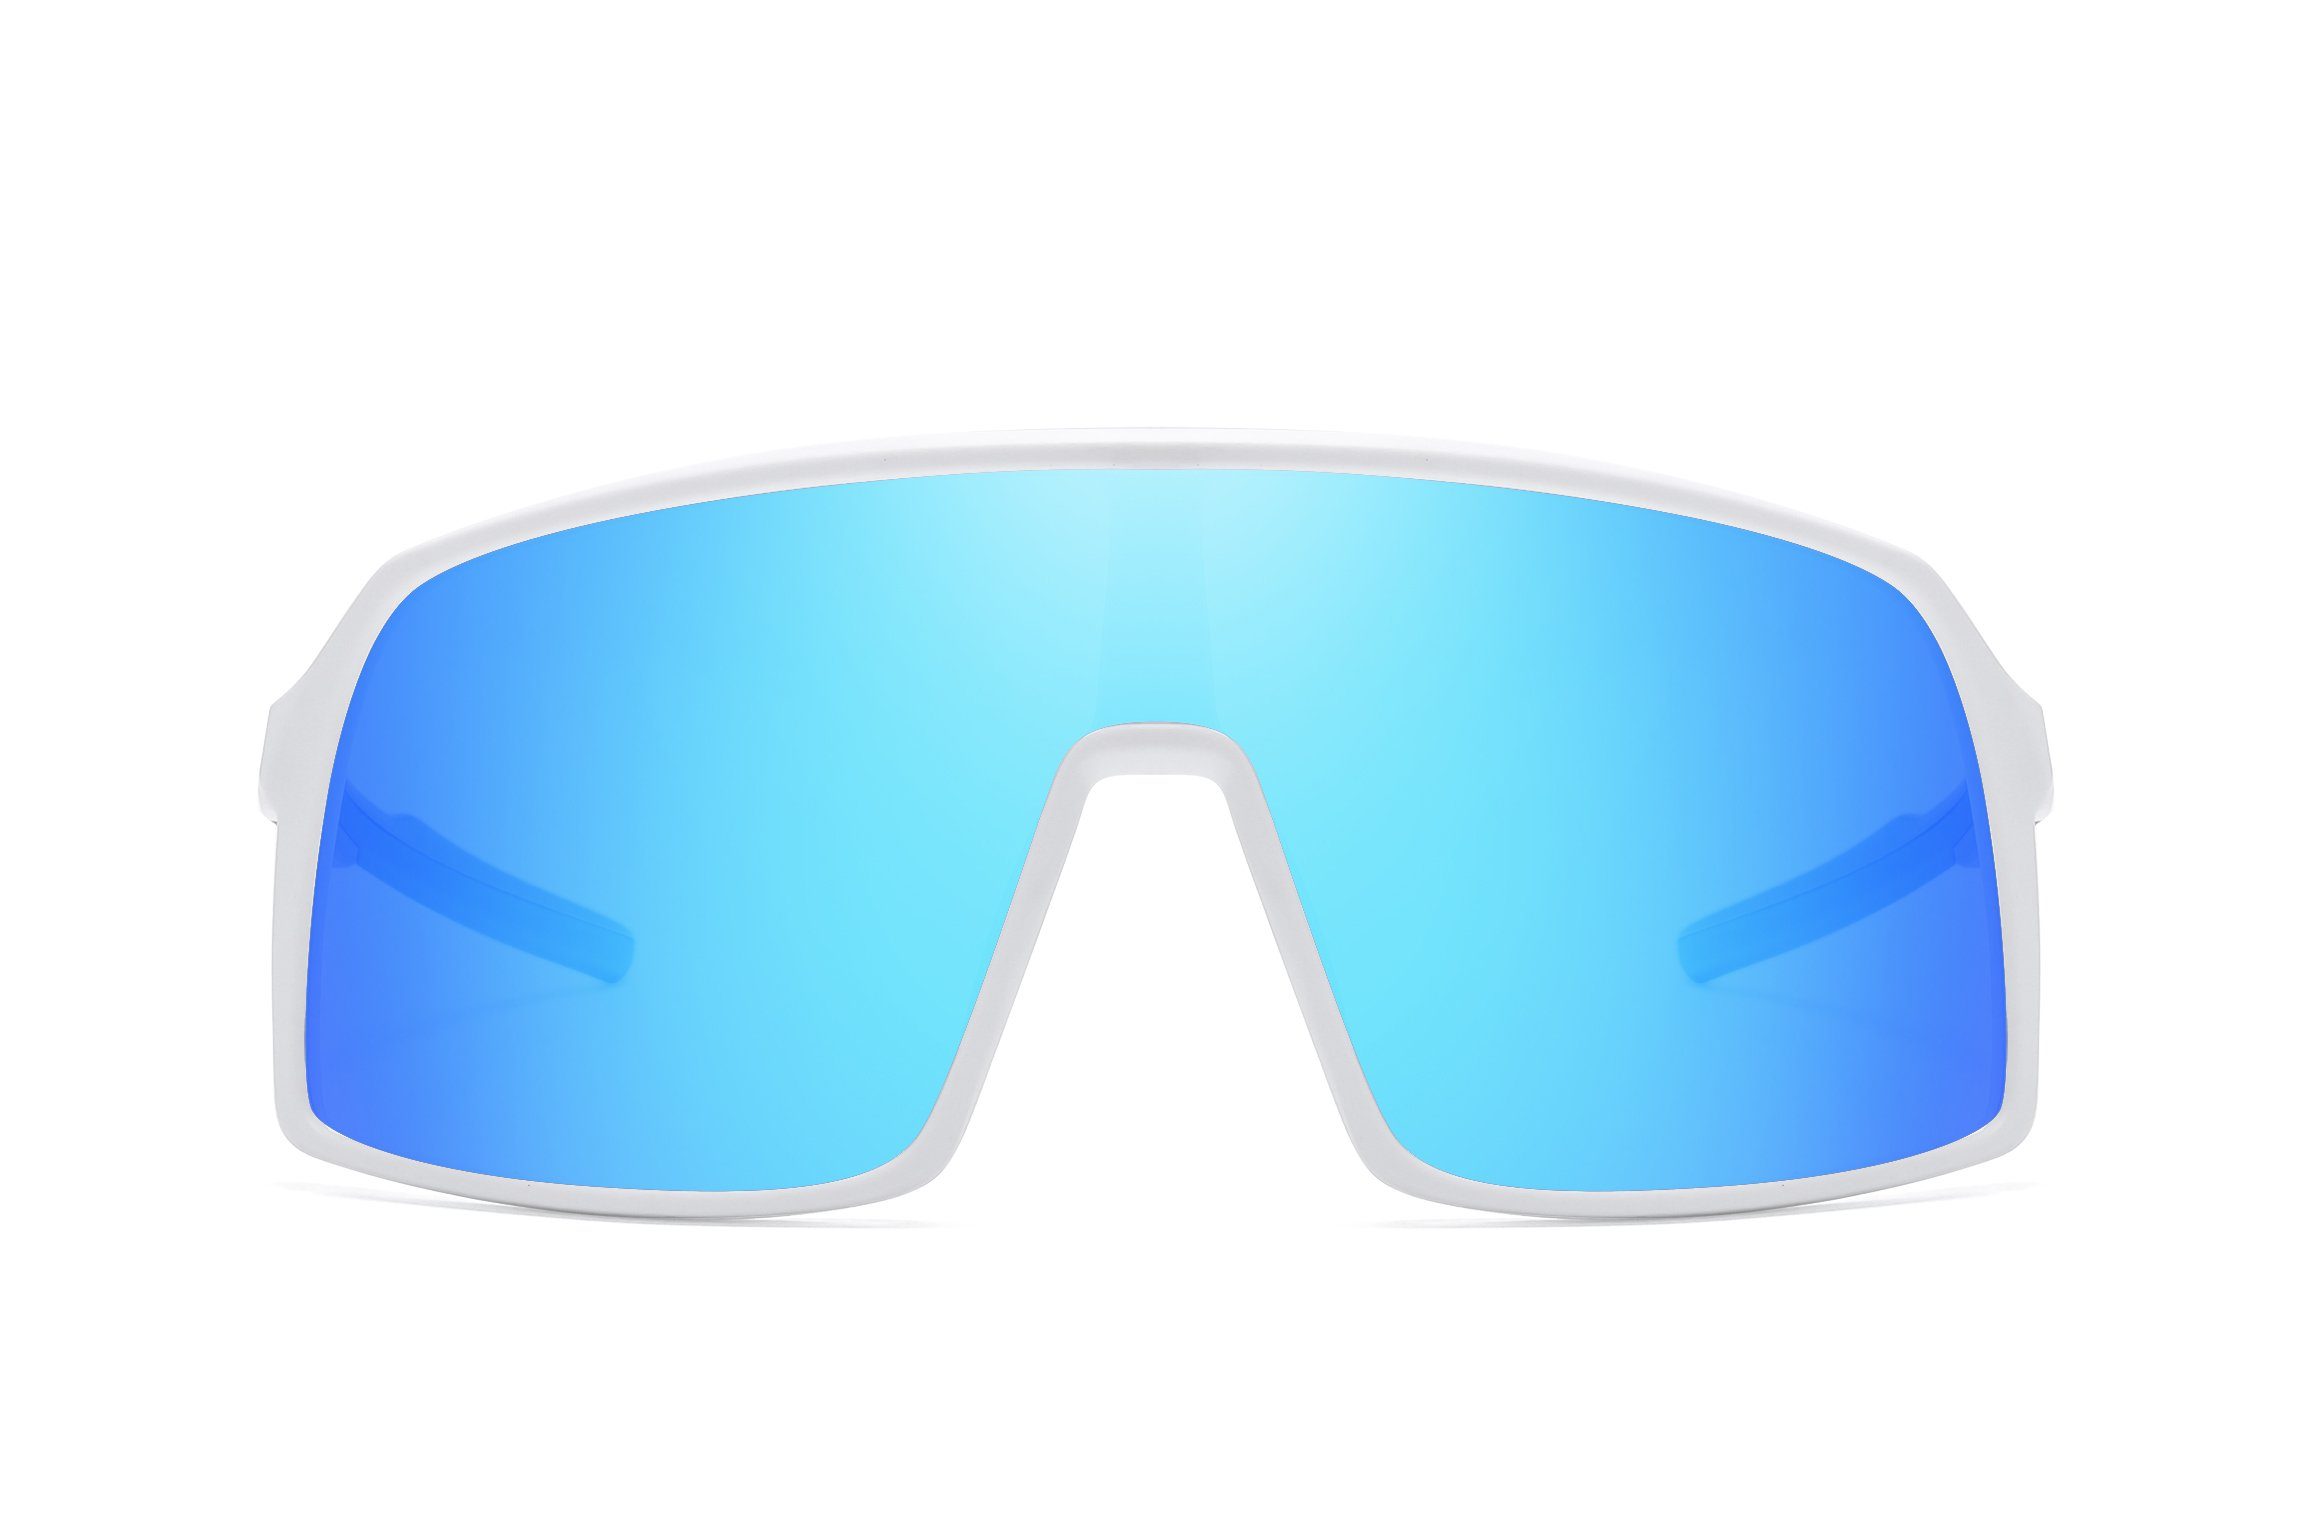 Sportbrille PACIEA leicht polarisiert Fahrradbrille Damen Unisex weißblau Herren Fahrradbrille